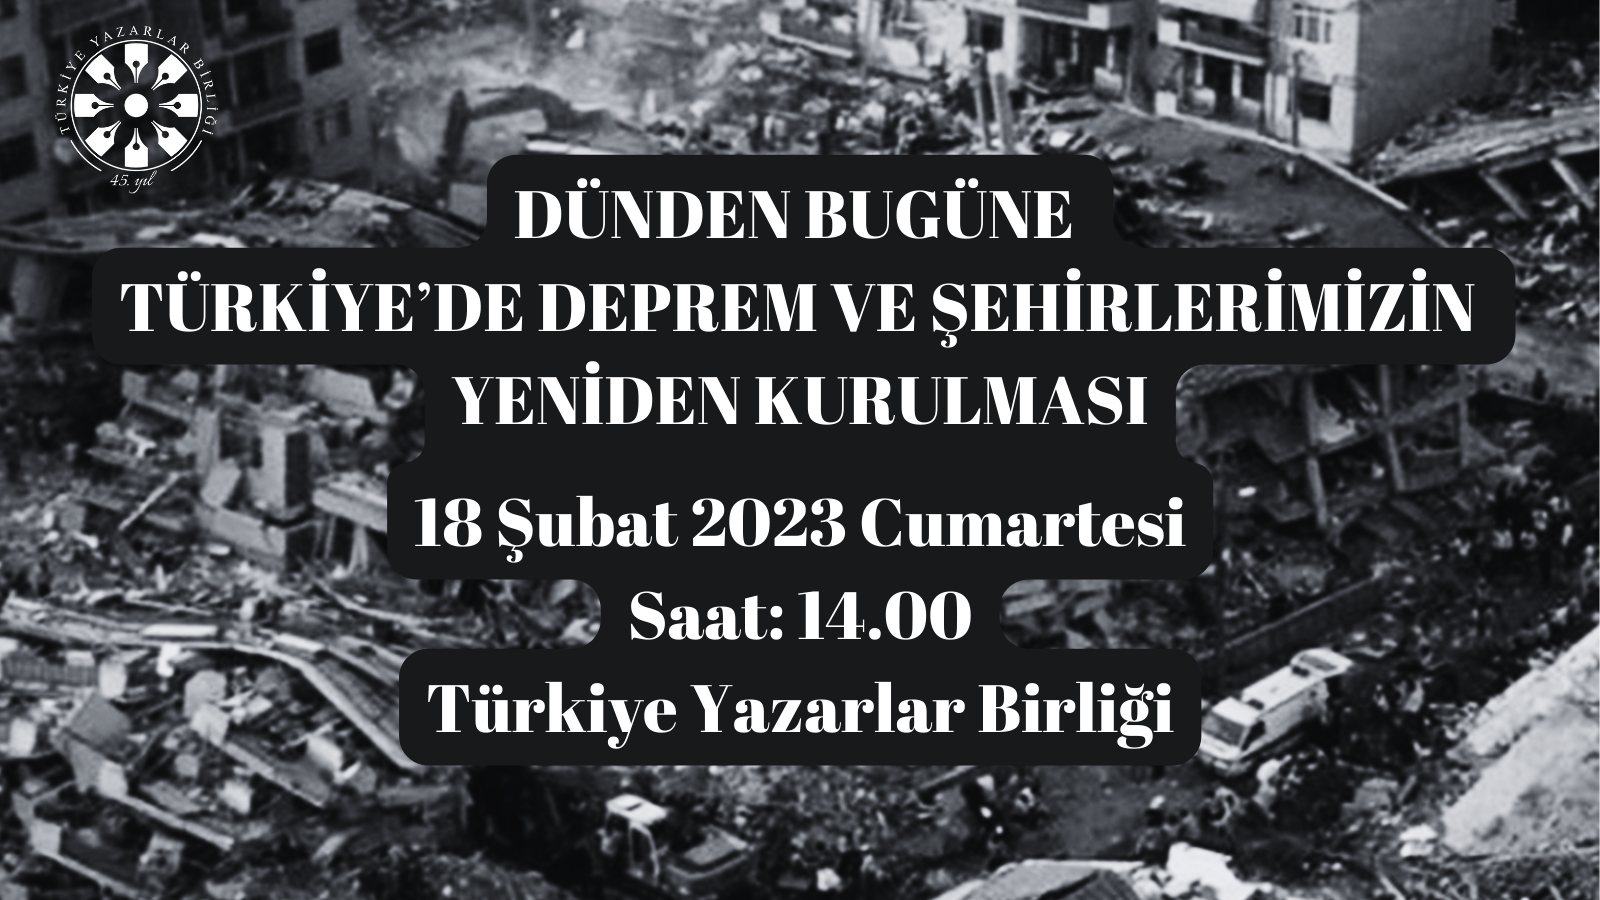 TYB - “Dünden bugüne Türkiye’de deprem ve şehirlerimizin yeniden kurulması” konulu panel düzenleyecek - ÖZƏL